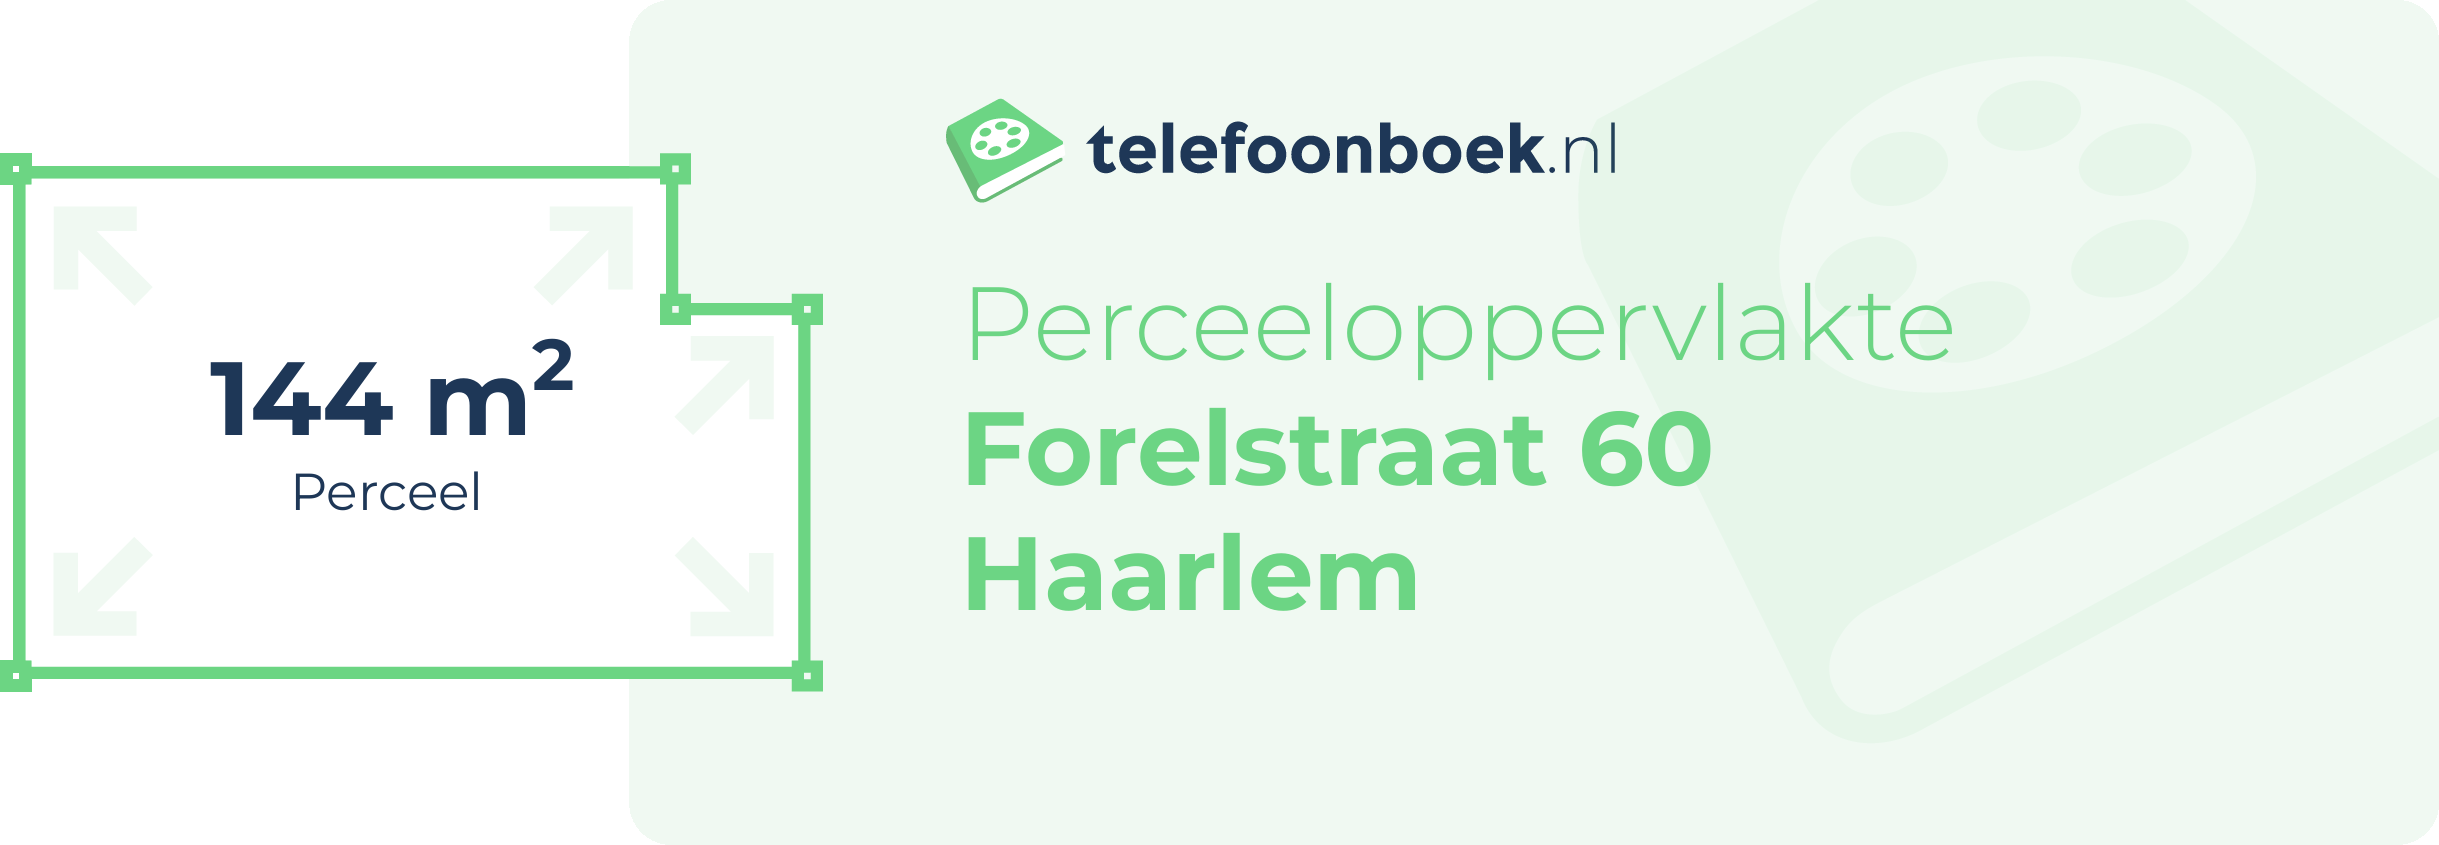 Perceeloppervlakte Forelstraat 60 Haarlem